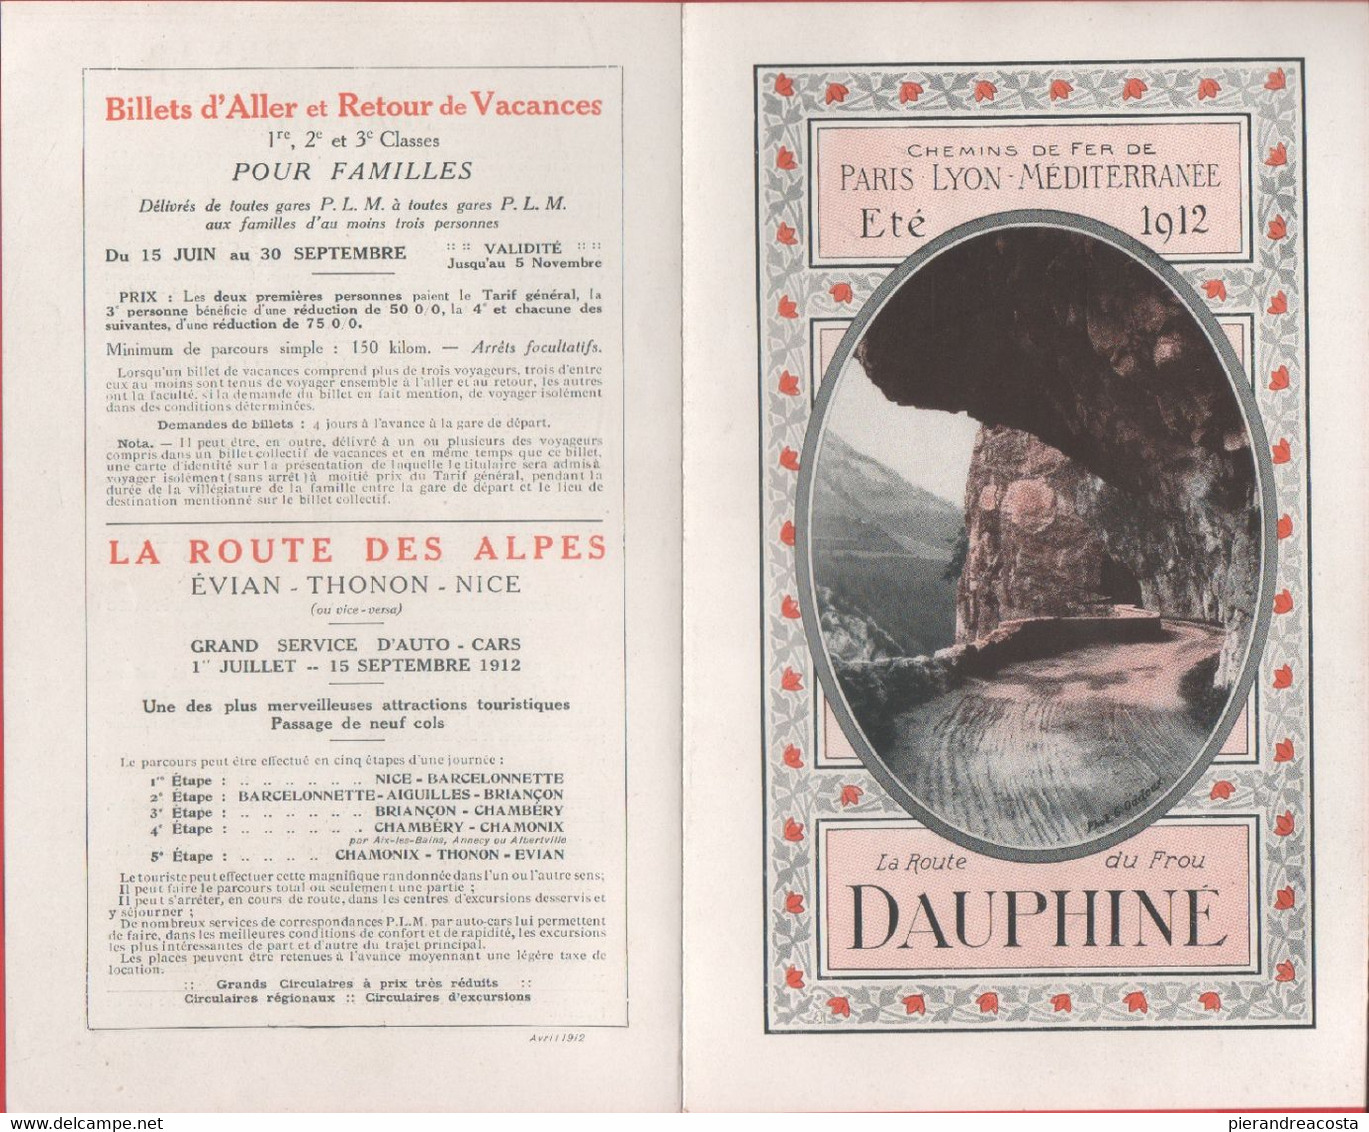 Chemin De Fer Paris Lyon-Mediterranne. La Route Du Frou Dauphiné. Eté 1914 - Europe